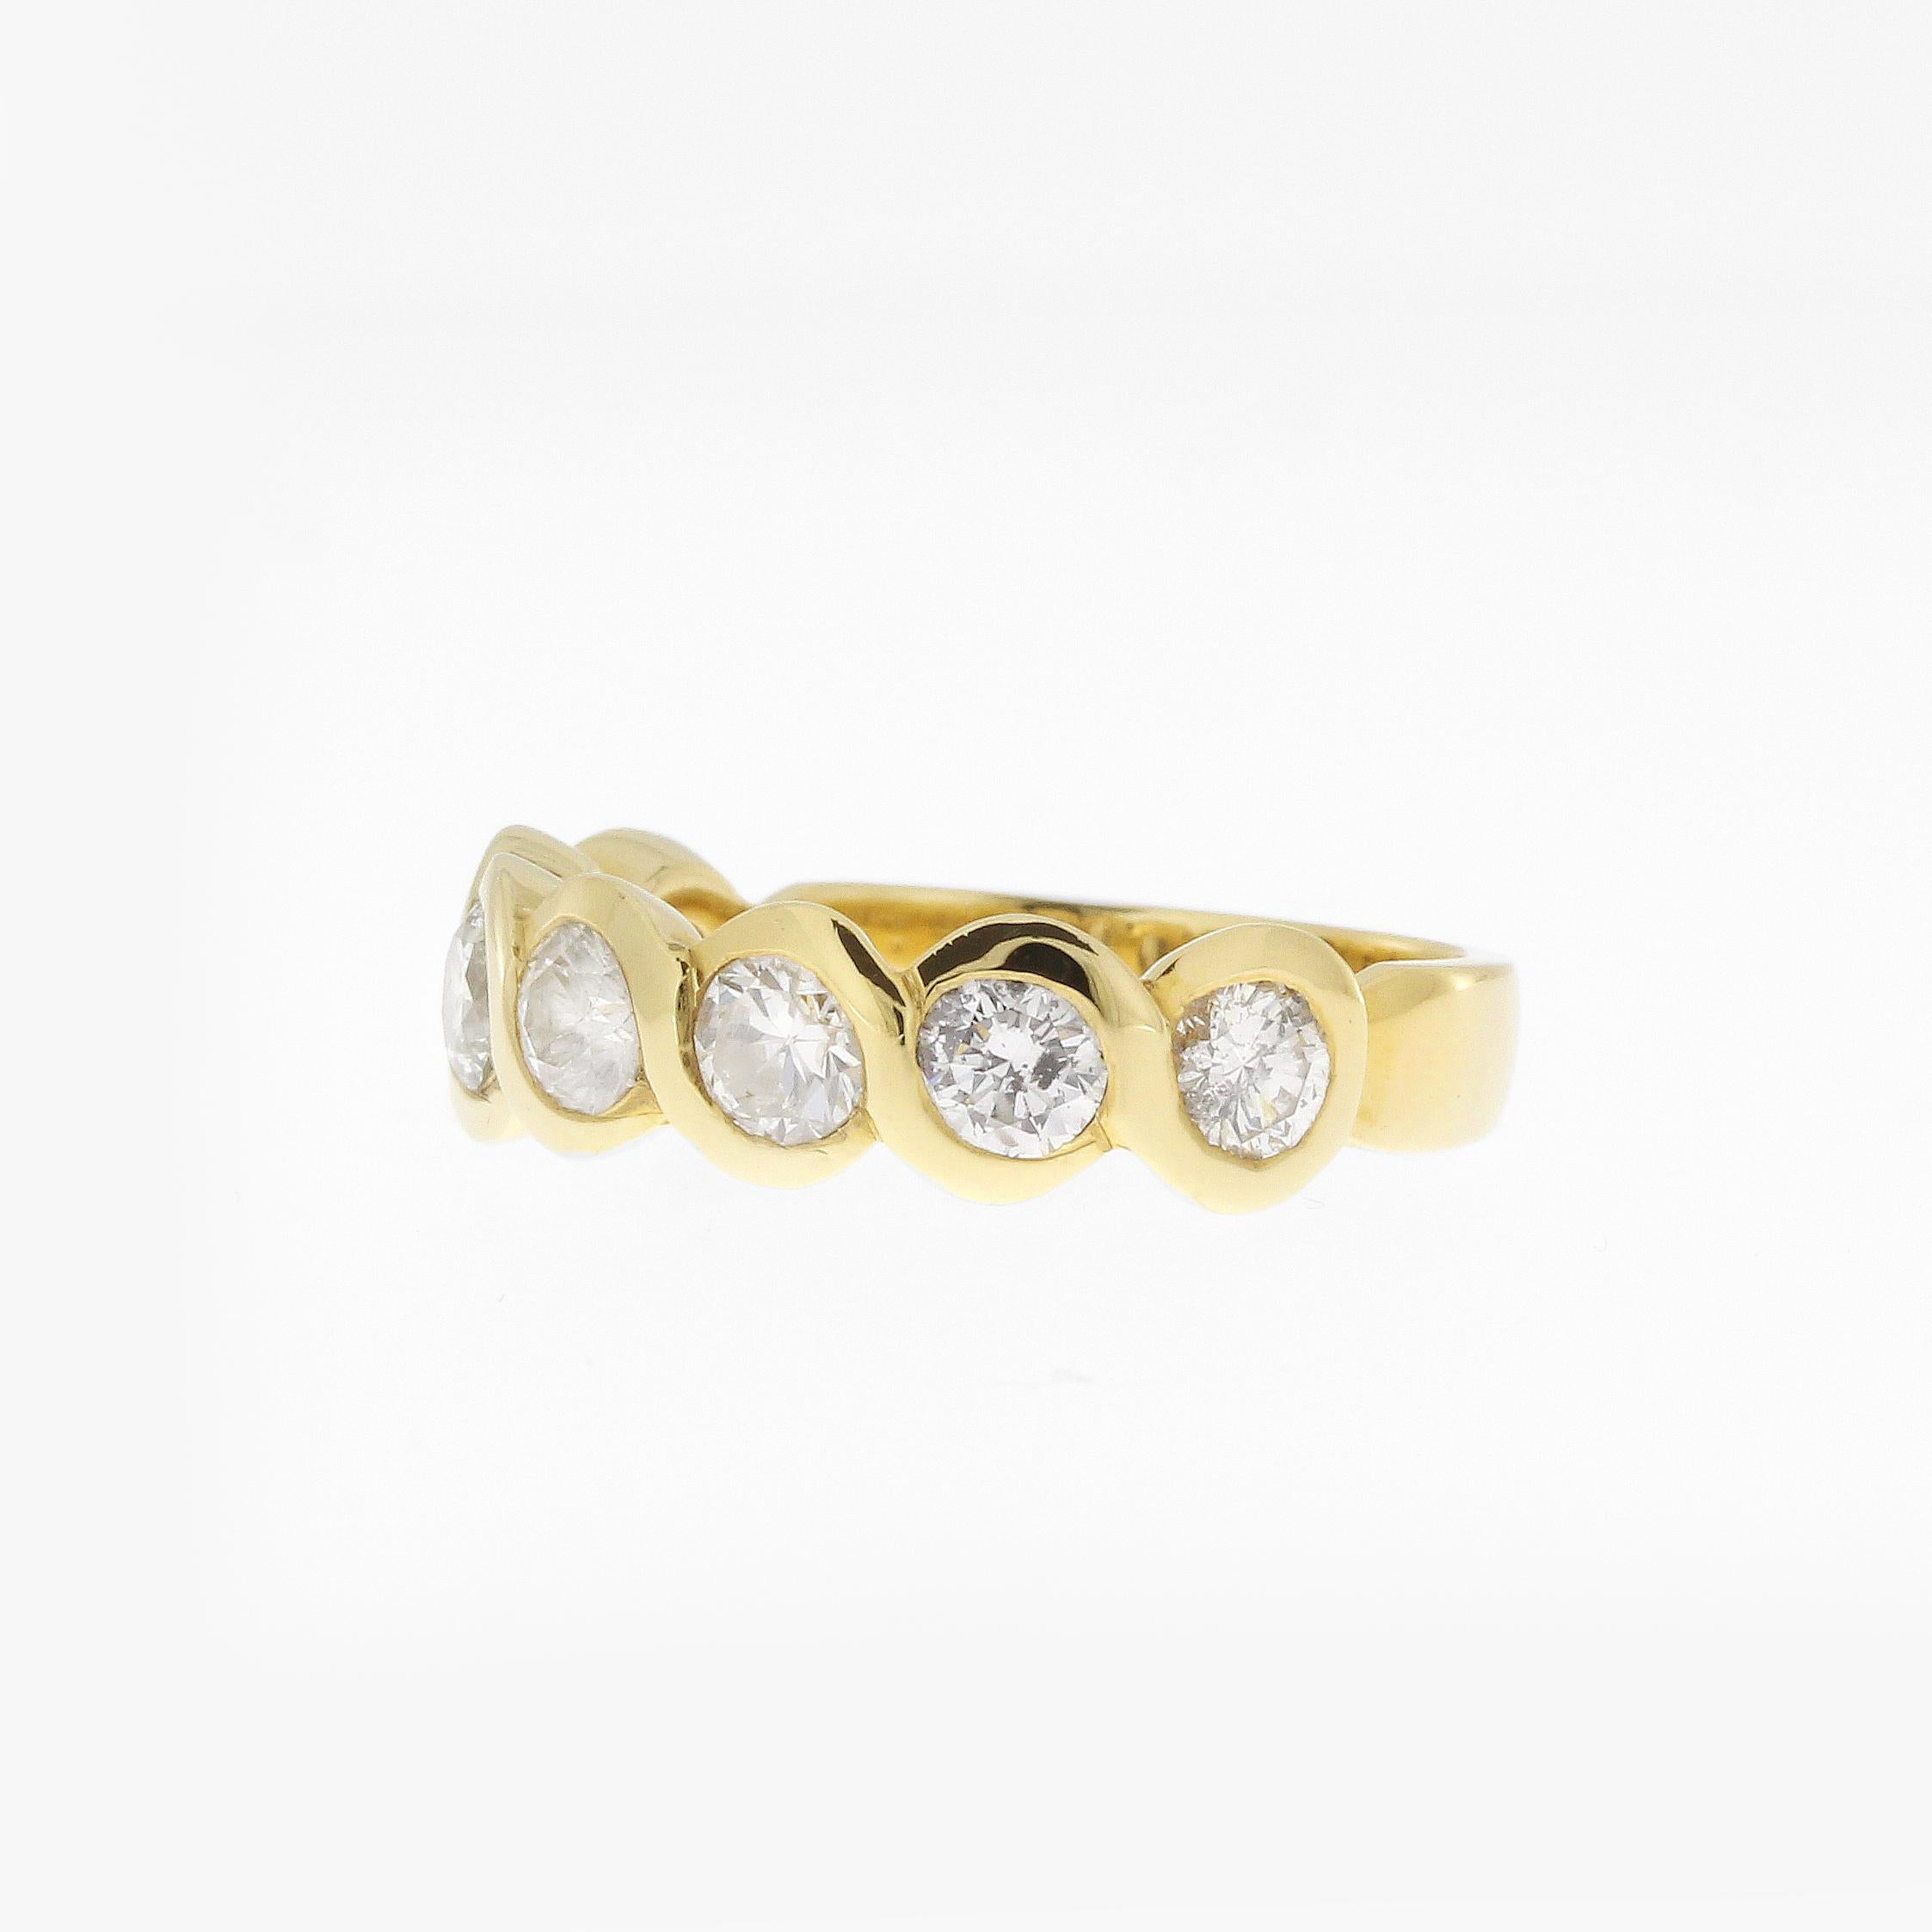 Vintage Gelbgold Halb Eternity Band Ring mit 7 Diamanten im Brillantschliff.
Klarheit: si2-i1